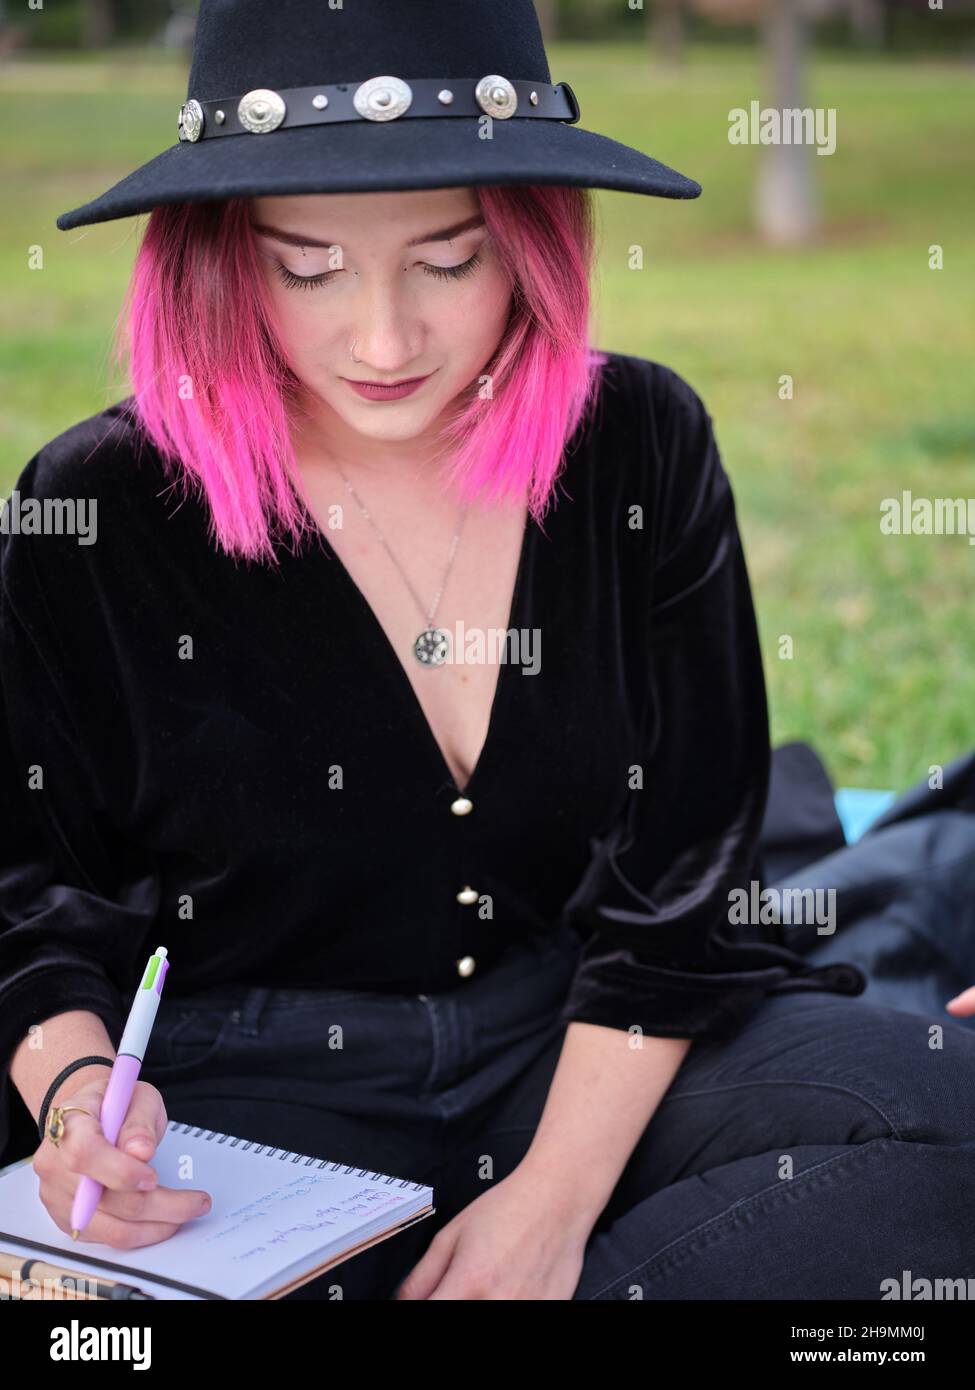 Porträt eines jungen Mädchens mit rosa Haaren und einem schwarzen Hut, das mit einem Notizbuch sitzt Stockfoto